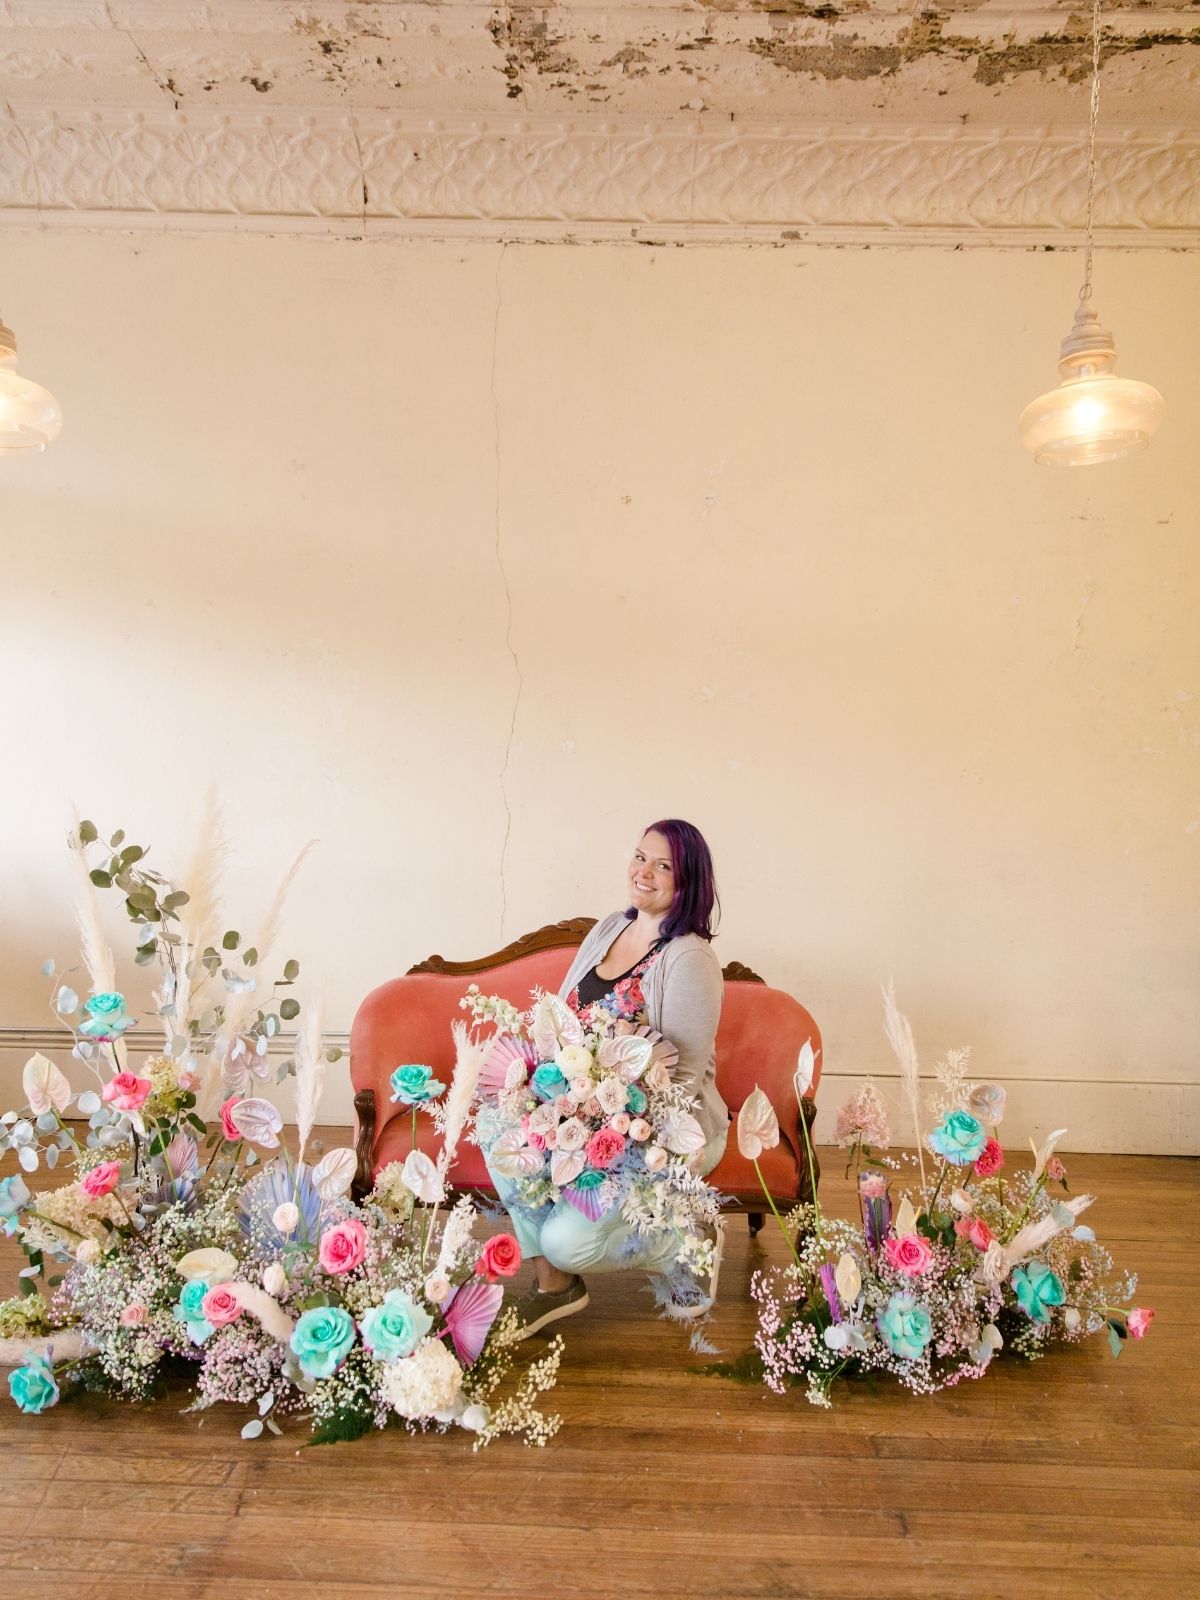 Erin McLarty Eden's Echo floral designer - on Thursd